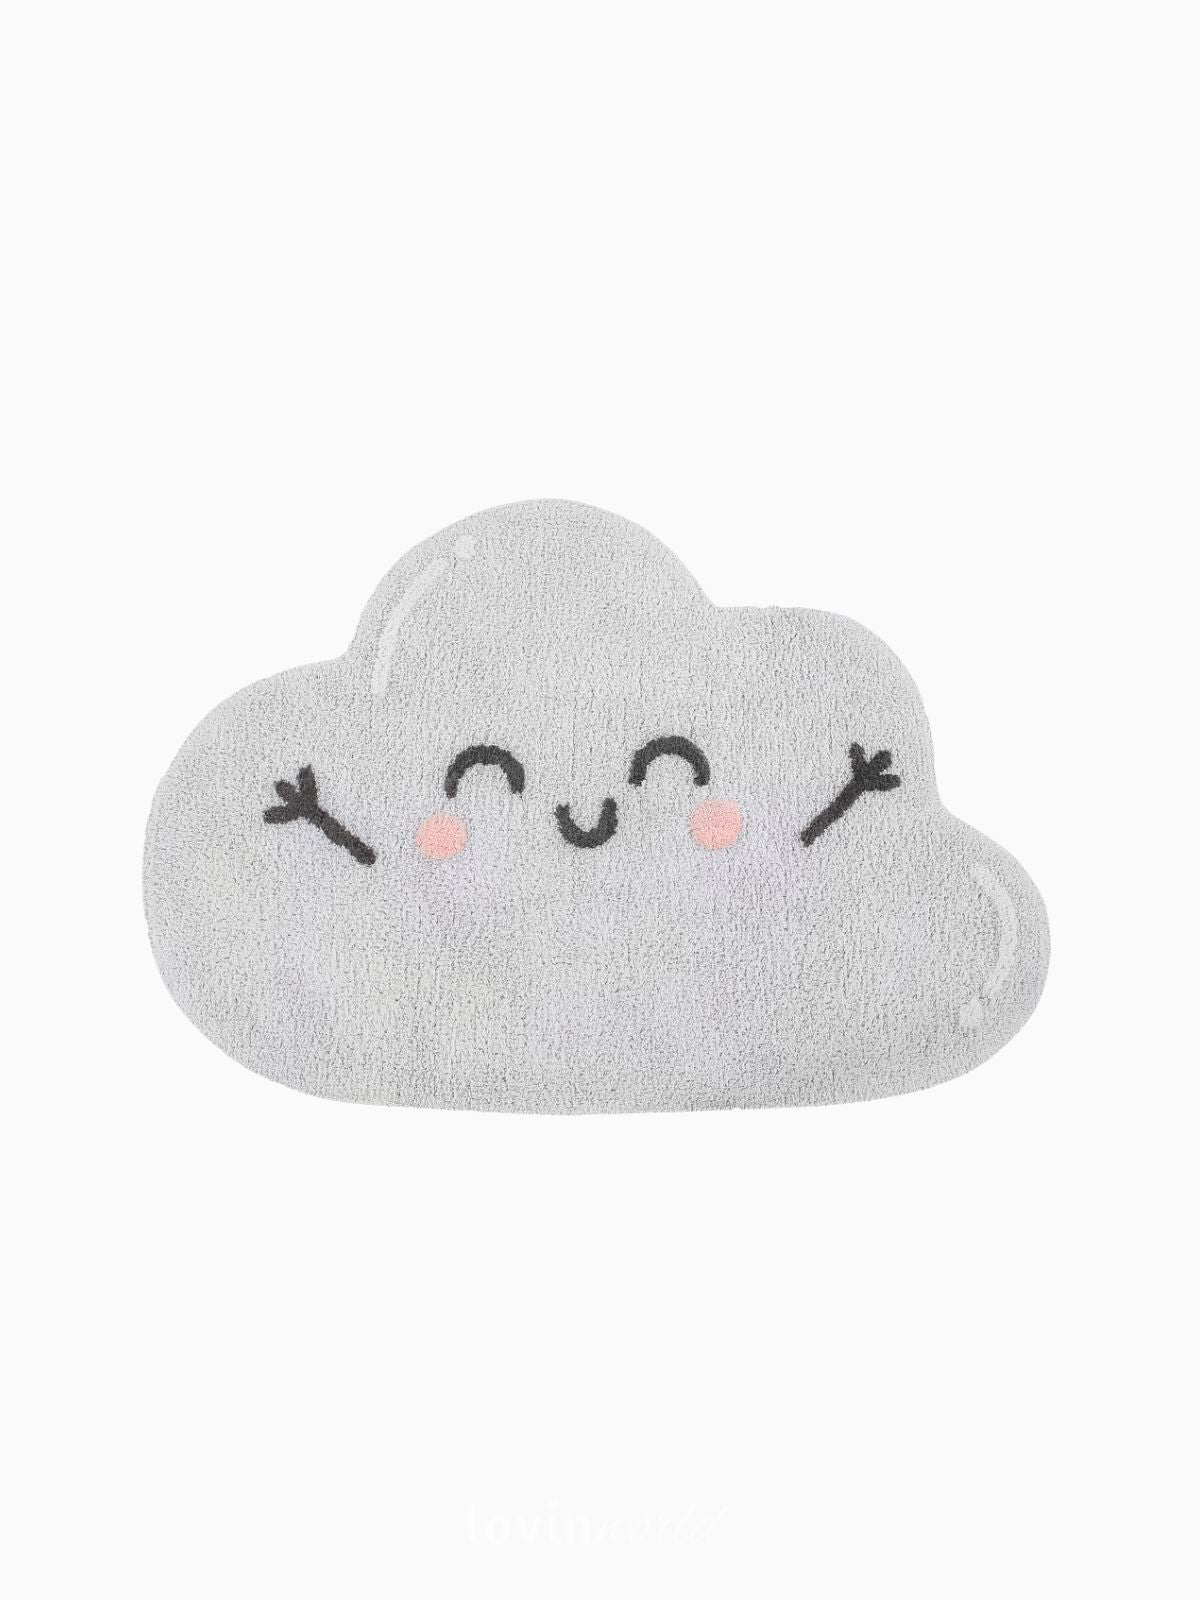 Tappeto in cotone lavabile Happy Cloud, 120x85 cm.-1